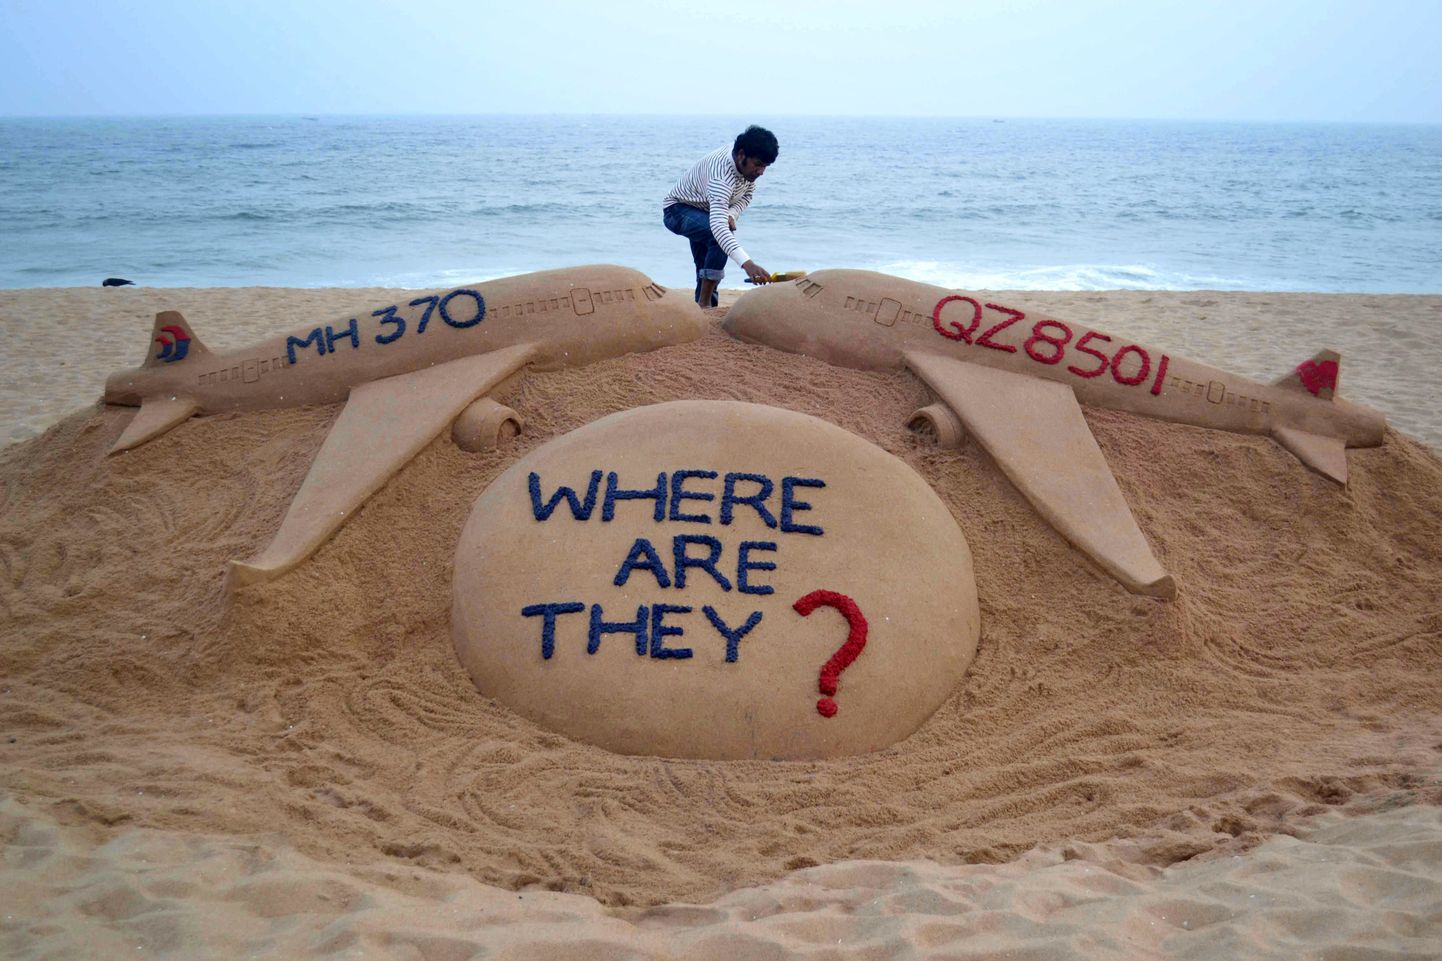 Liivaskulptuur, mis küsib, kus on lend MH370 ja praeguseks leitud AirAsia lend QZ8501.